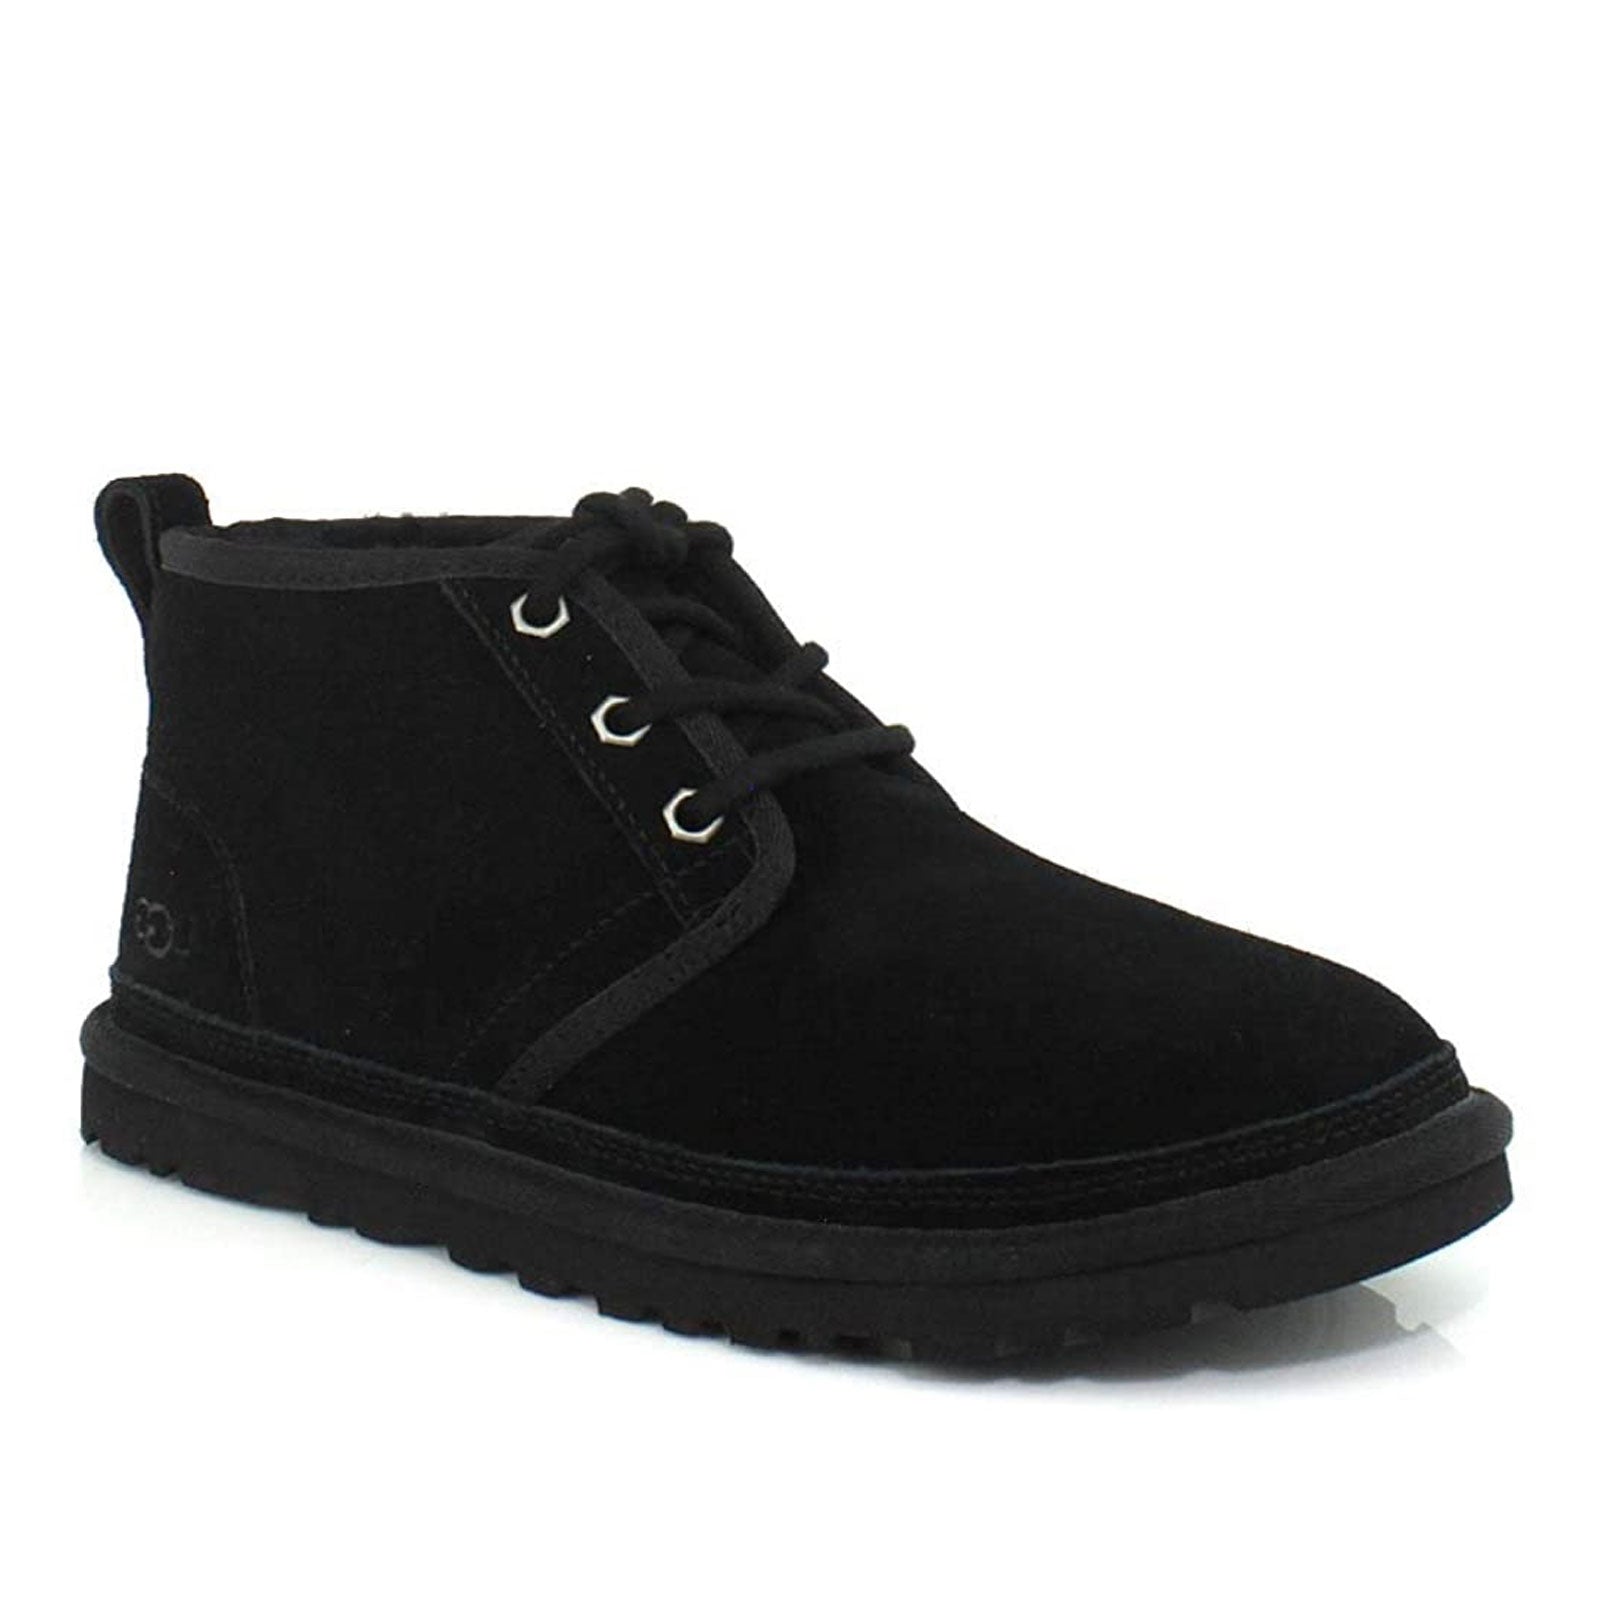 UGG Neumel Boots- Black